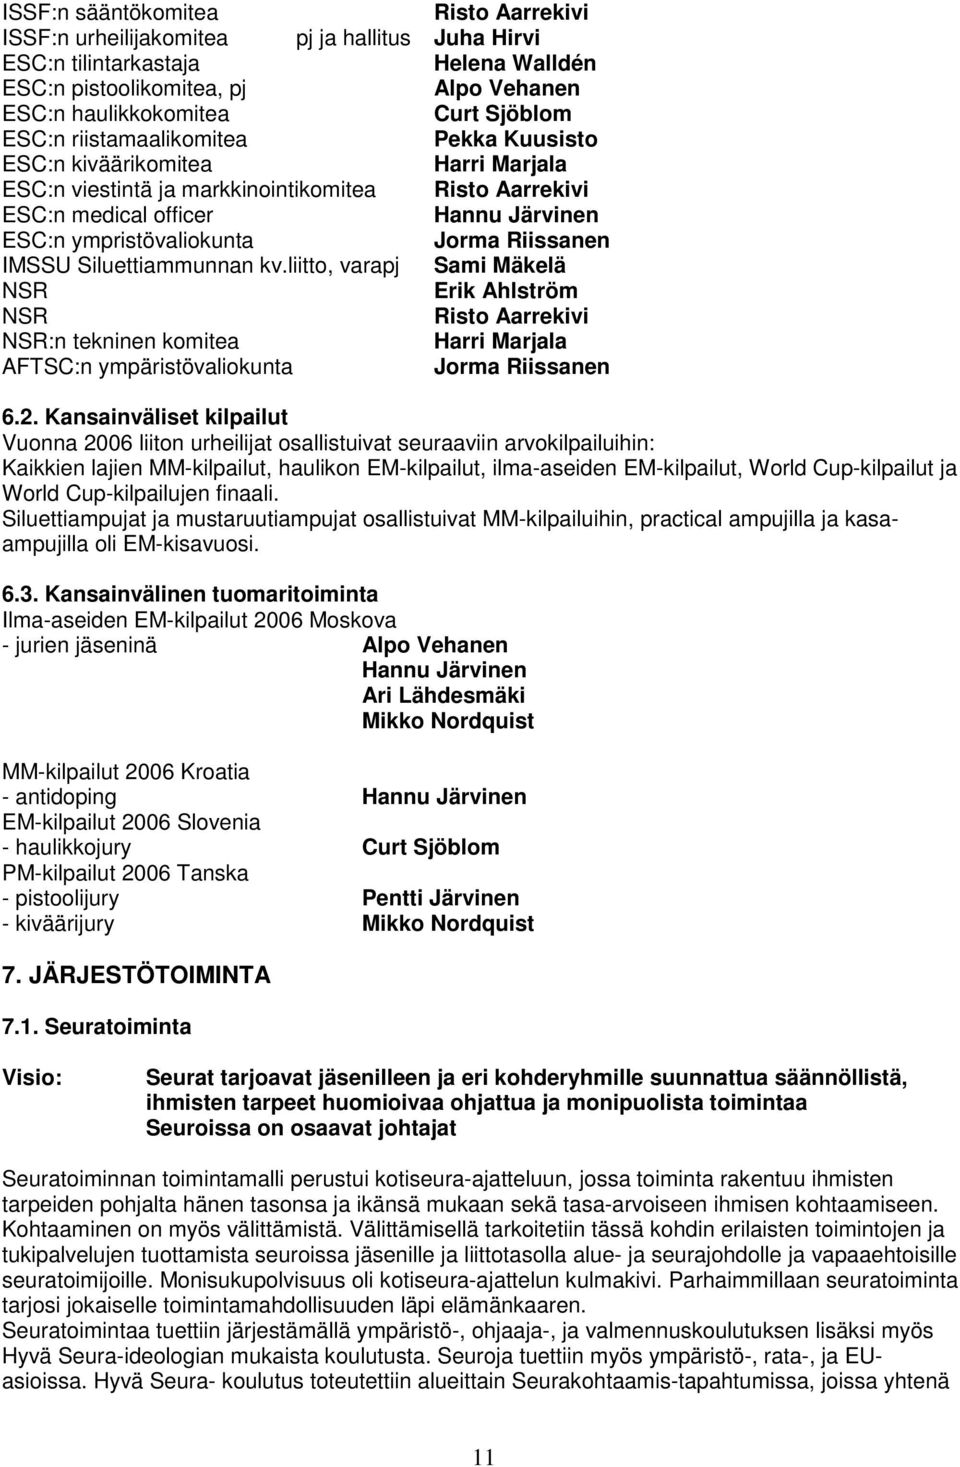 Riissanen IMSSU Siluettiammunnan kv.liitto, varapj Sami Mäkelä NSR Erik Ahlström NSR Risto Aarrekivi NSR:n tekninen komitea Harri Marjala AFTSC:n ympäristövaliokunta Jorma Riissanen 6.2.